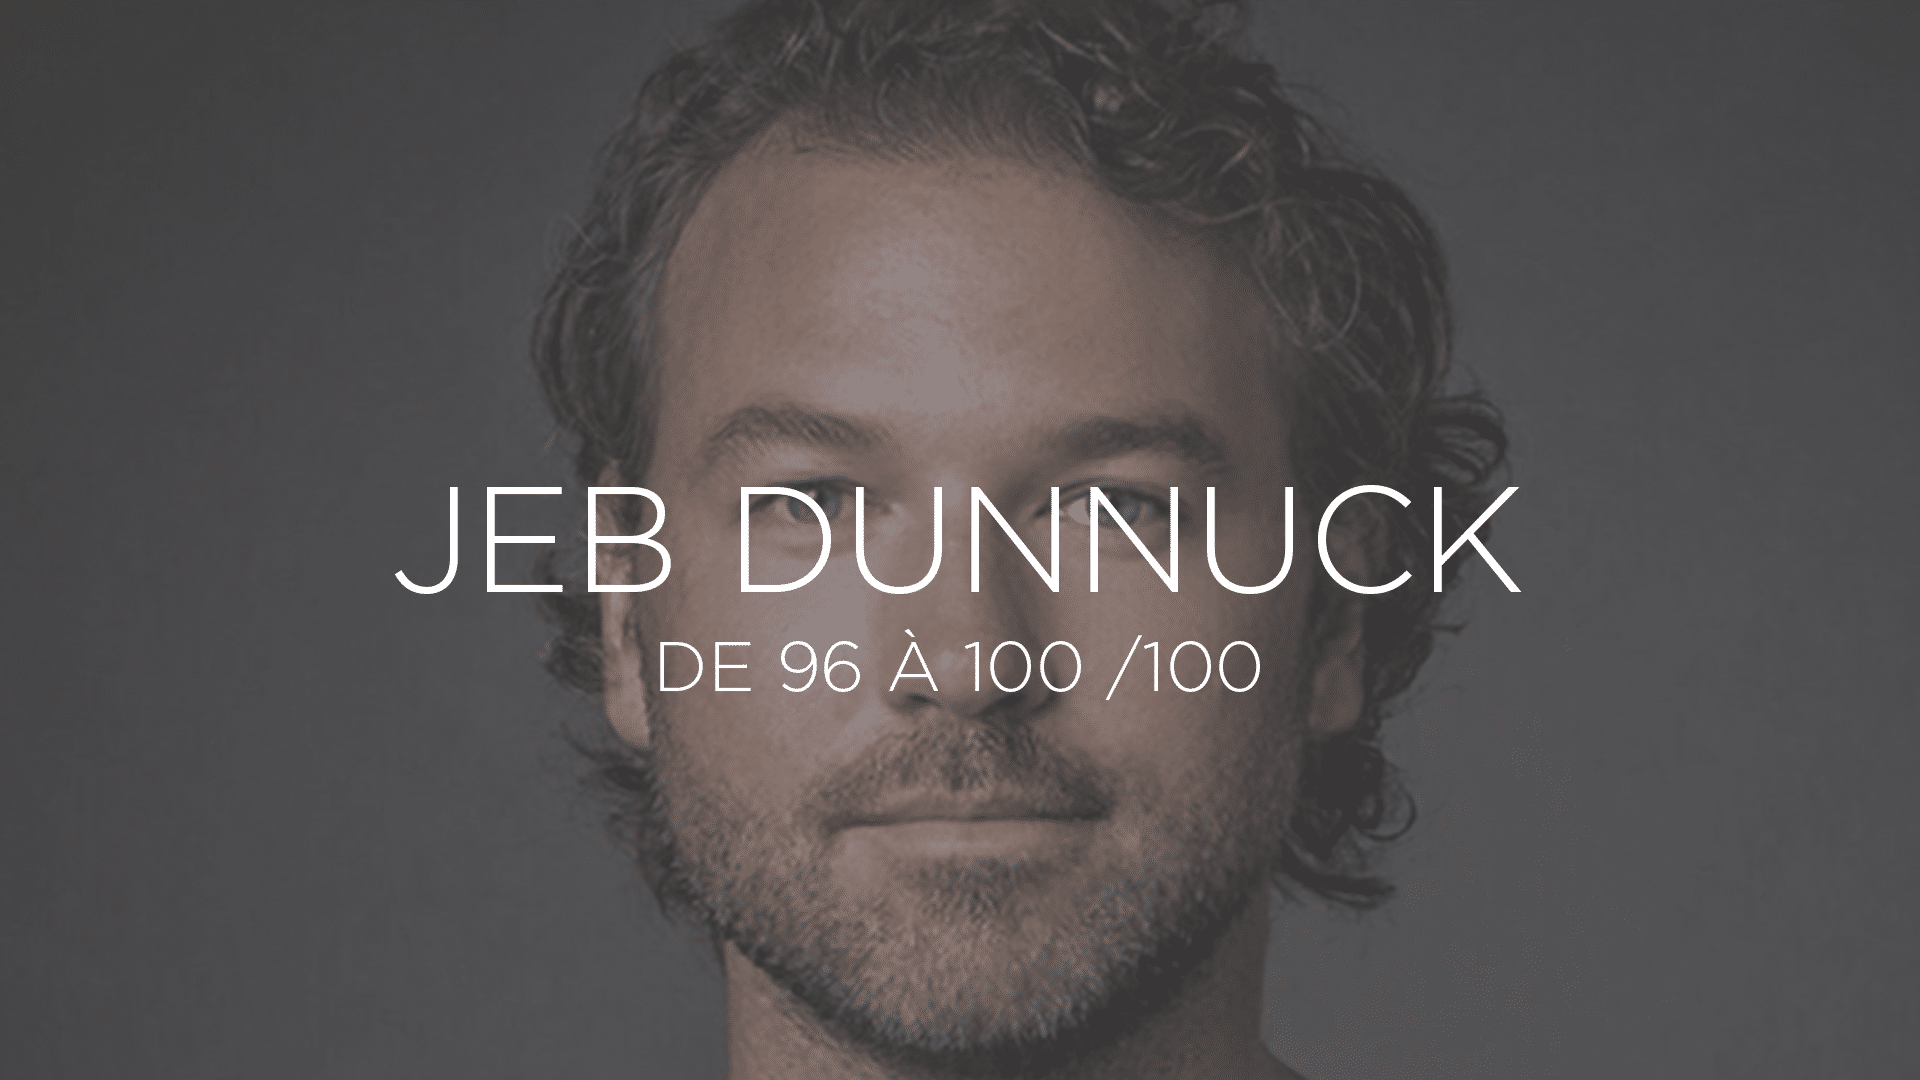 Miniature catégorie : tous les vins notés par Jeb Dunnuck de 96 à 100 sur 100.